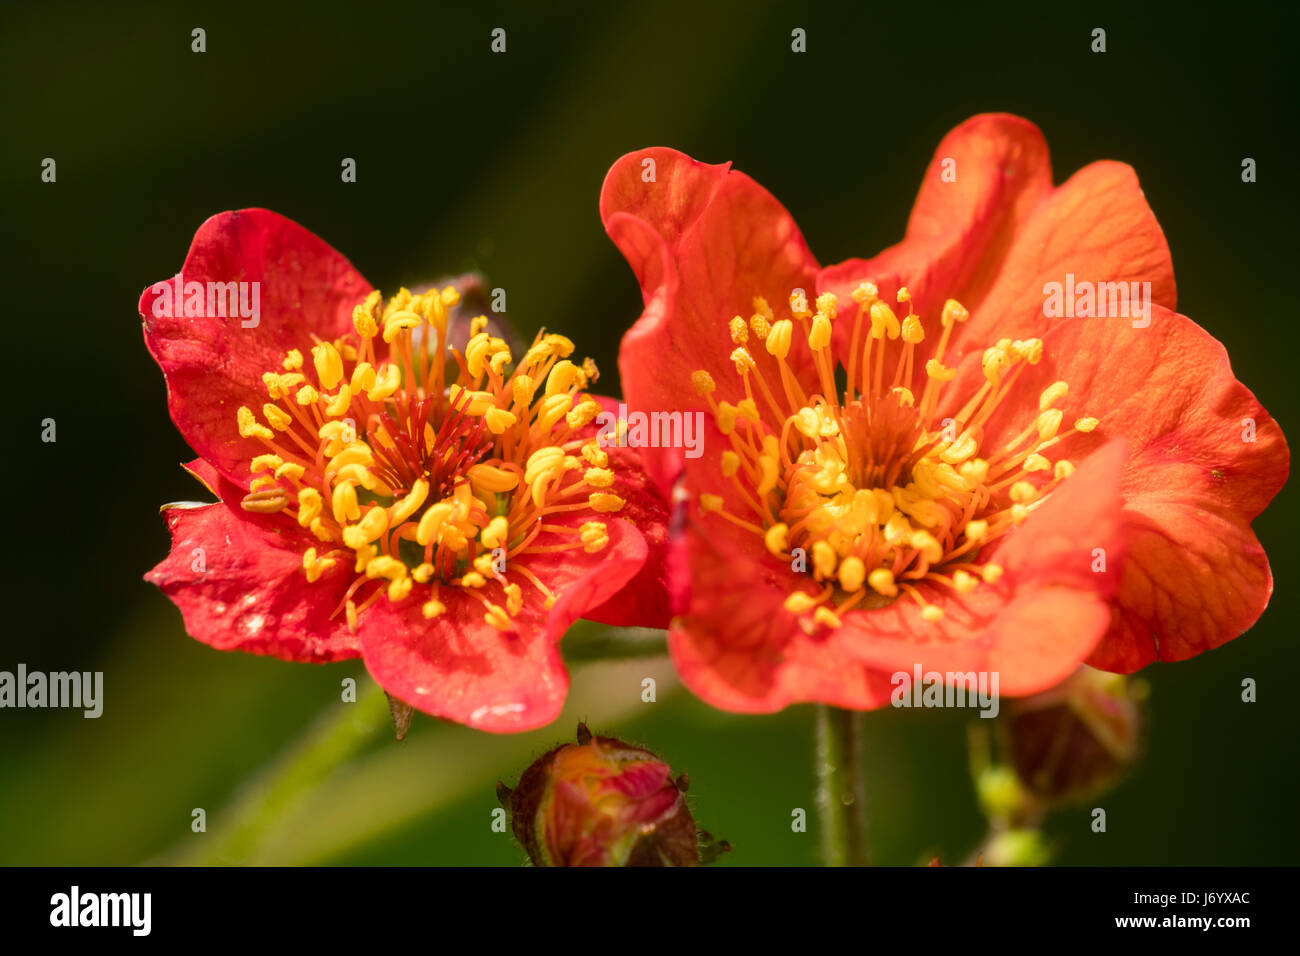 Roten Blüten und kontrastierenden gelben Staubbeuteln zeichnen die Blumen von der drahtige stemmed mehrjährige, Geum magellanicum Stockfoto